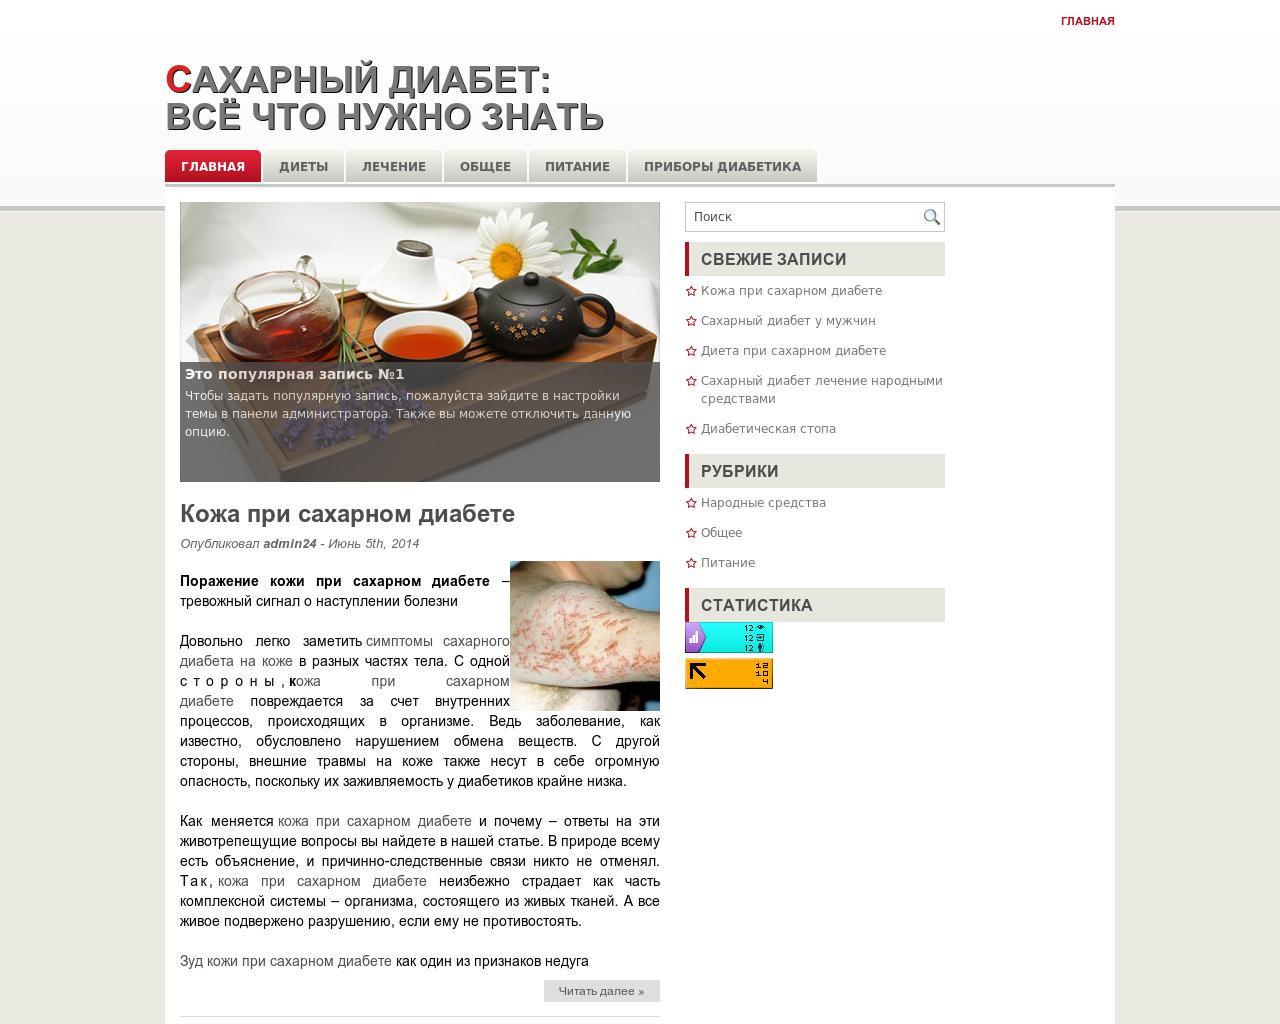 Изображение сайта diabet24.ru в разрешении 1280x1024